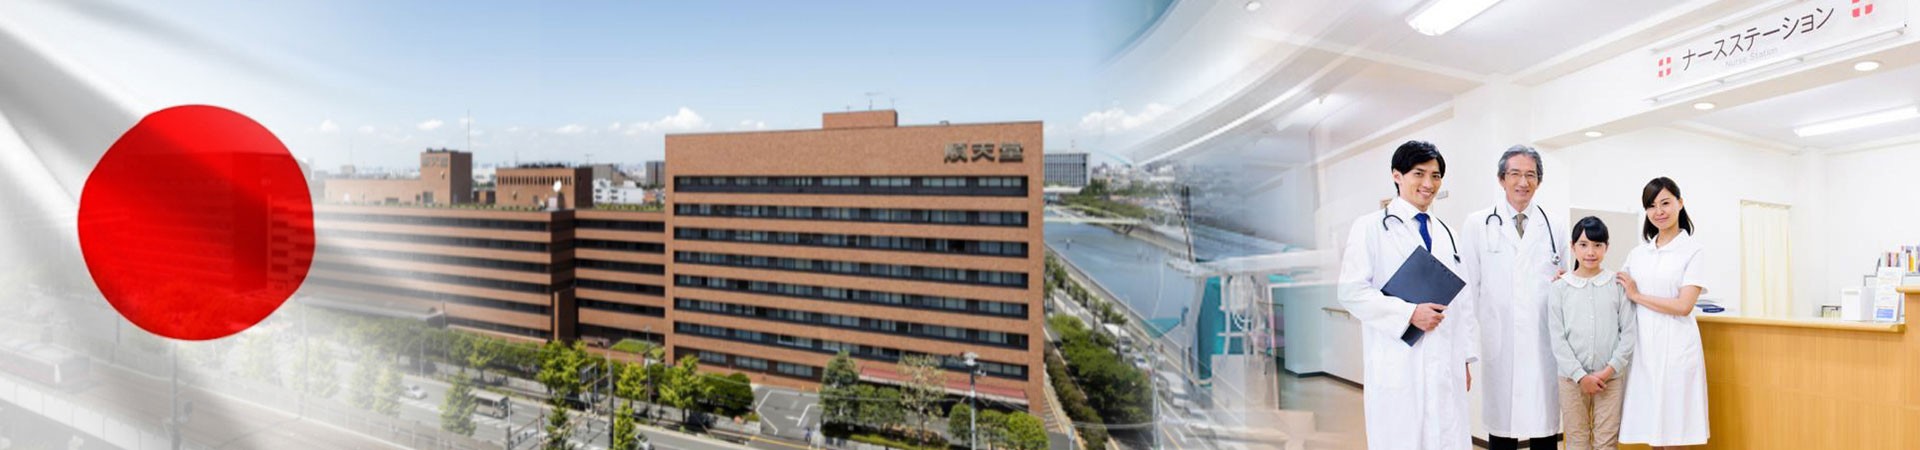 日本著名醫院